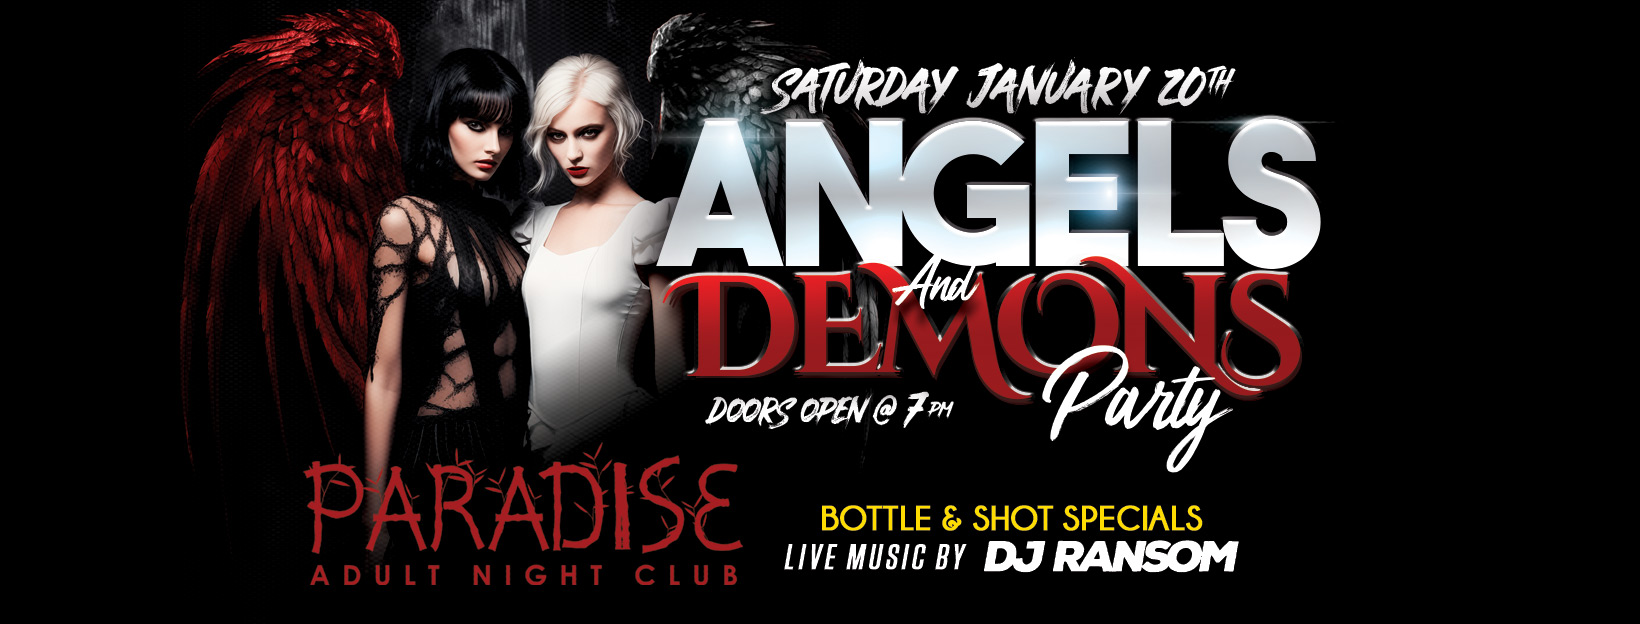 Paradise Night Club Angles & Demons Party Jan 20th Syracuse NY